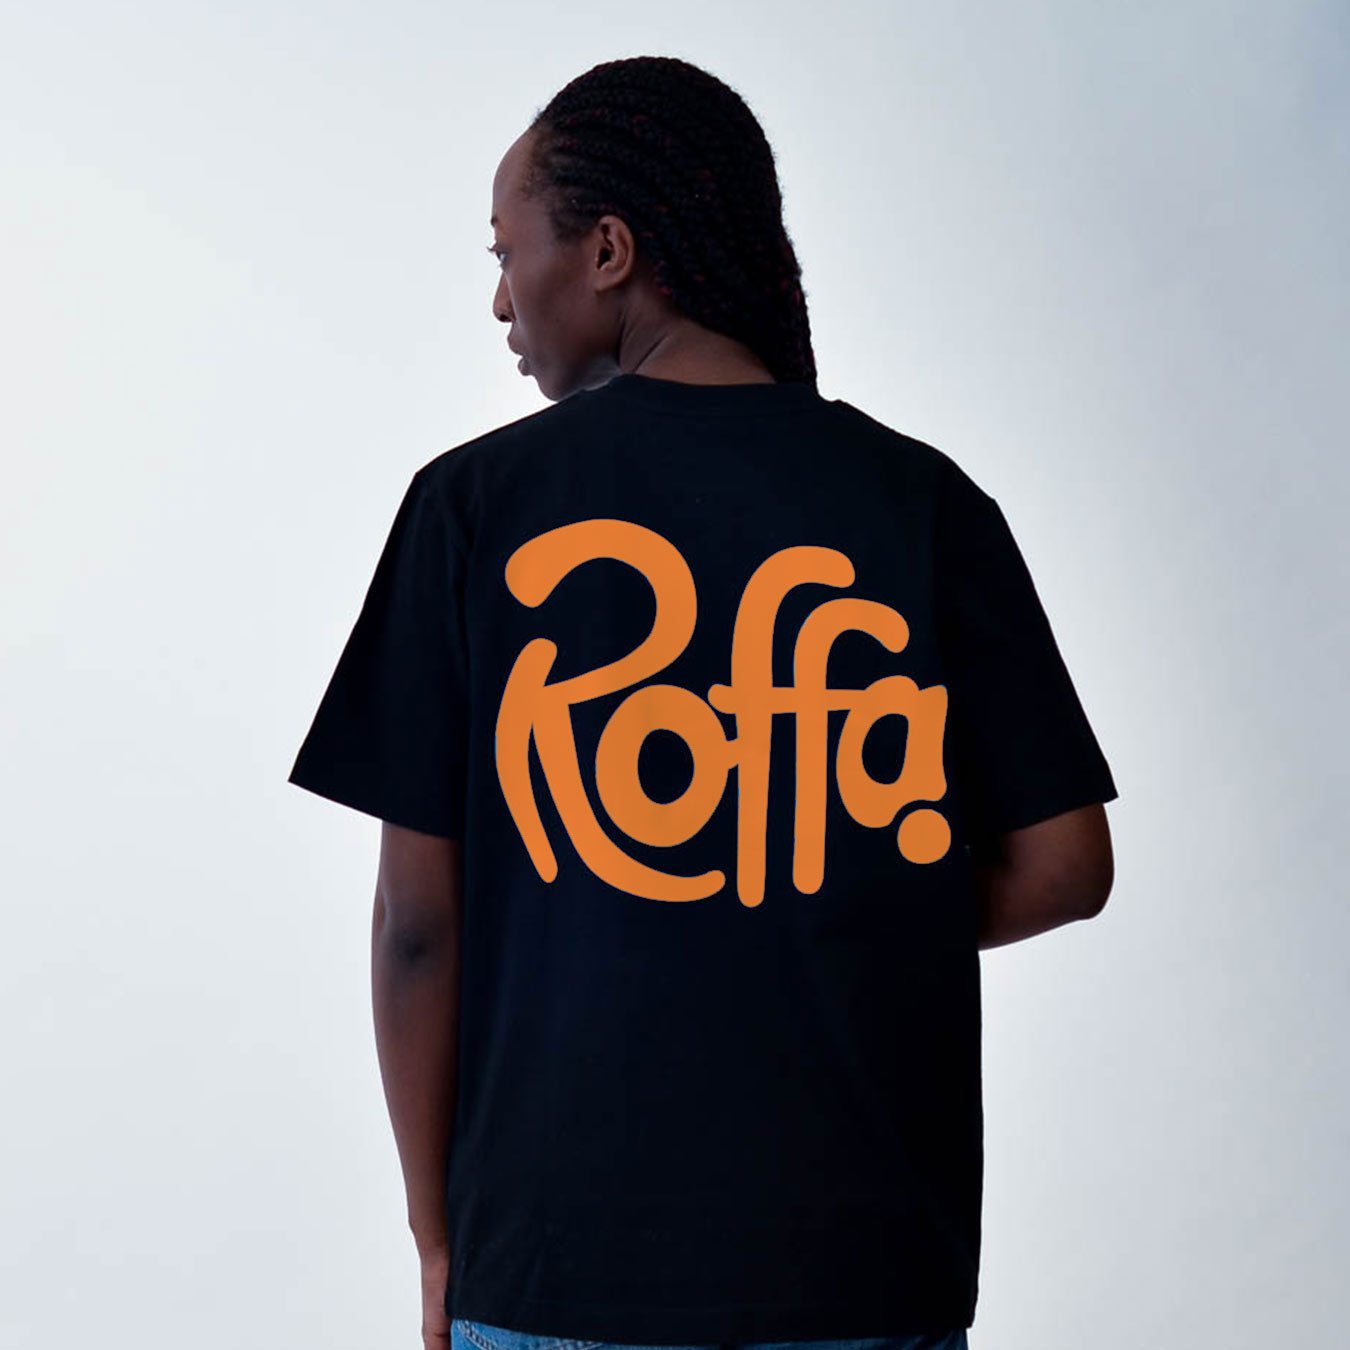 ROFFA. EK 2024 Special heavy t-shirt oversized - City Orange - 100% organisch katoen